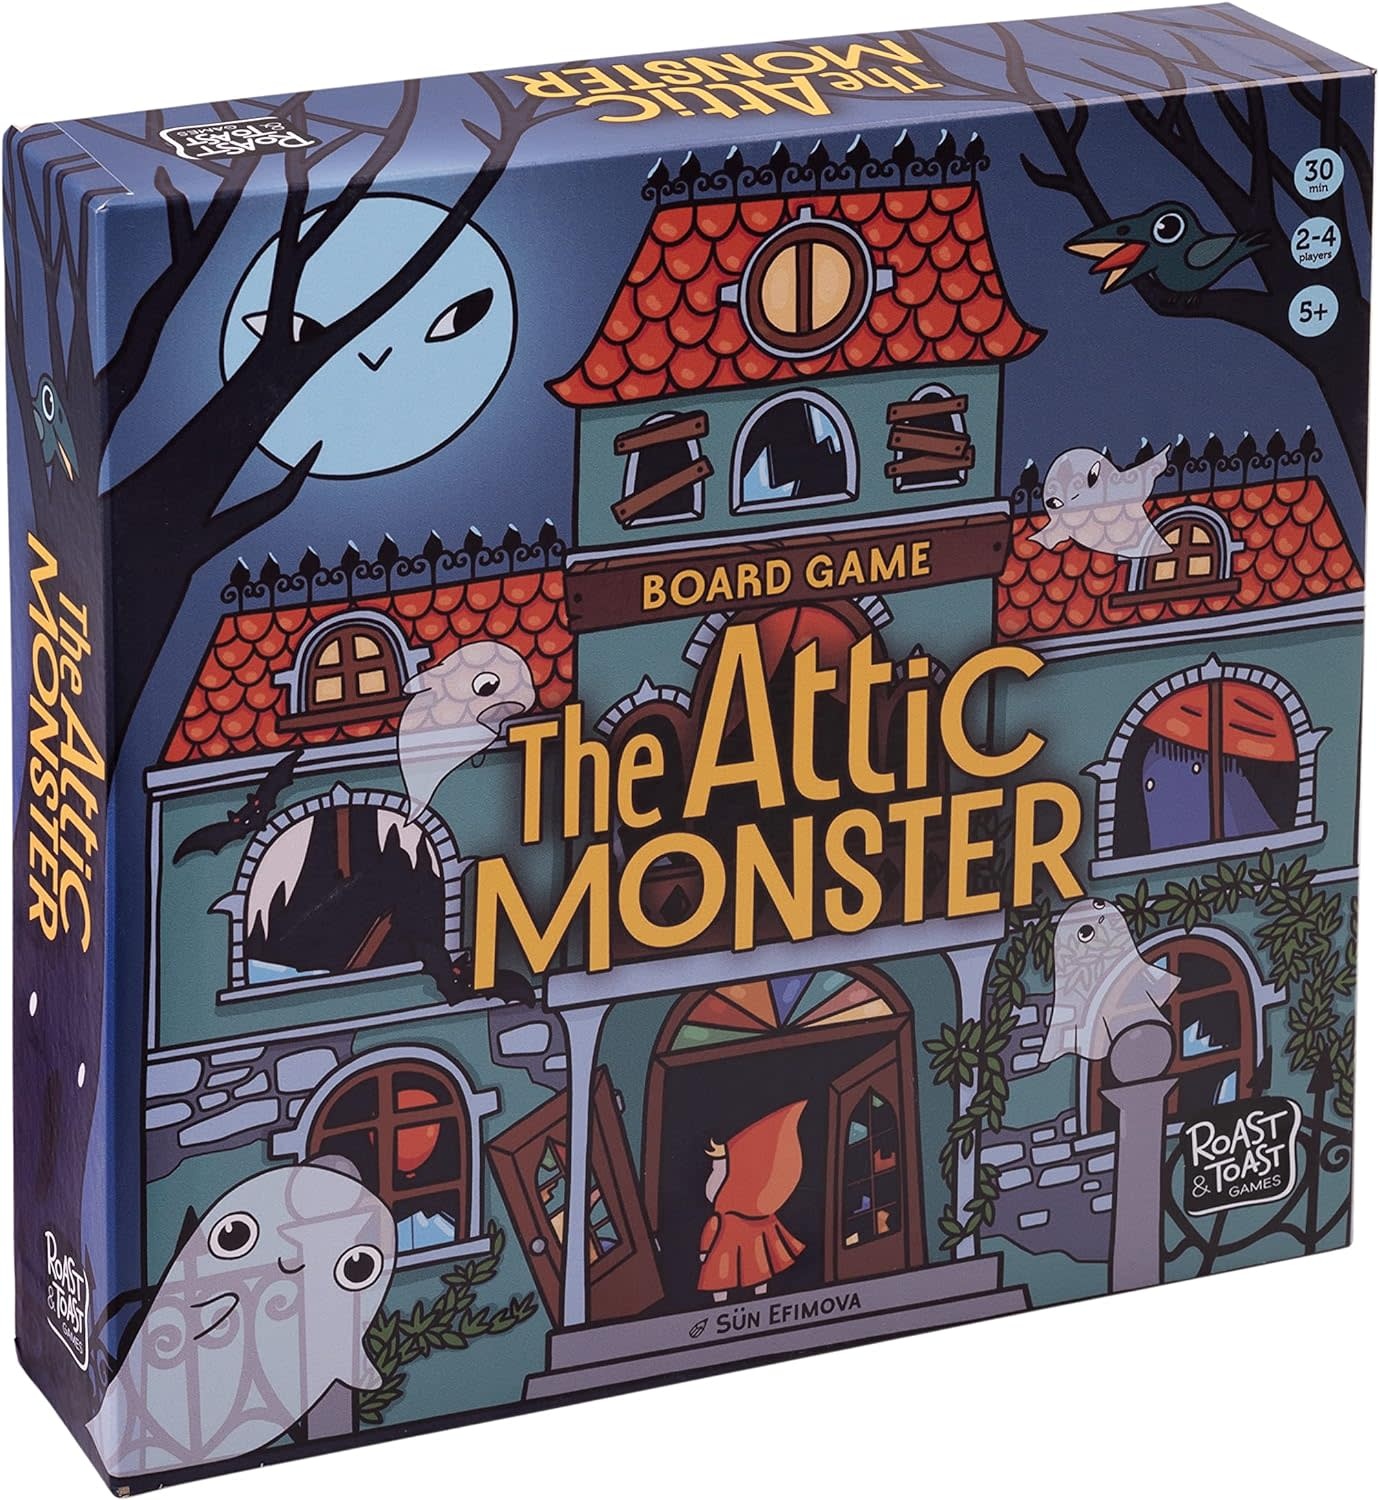 The Attic Monster